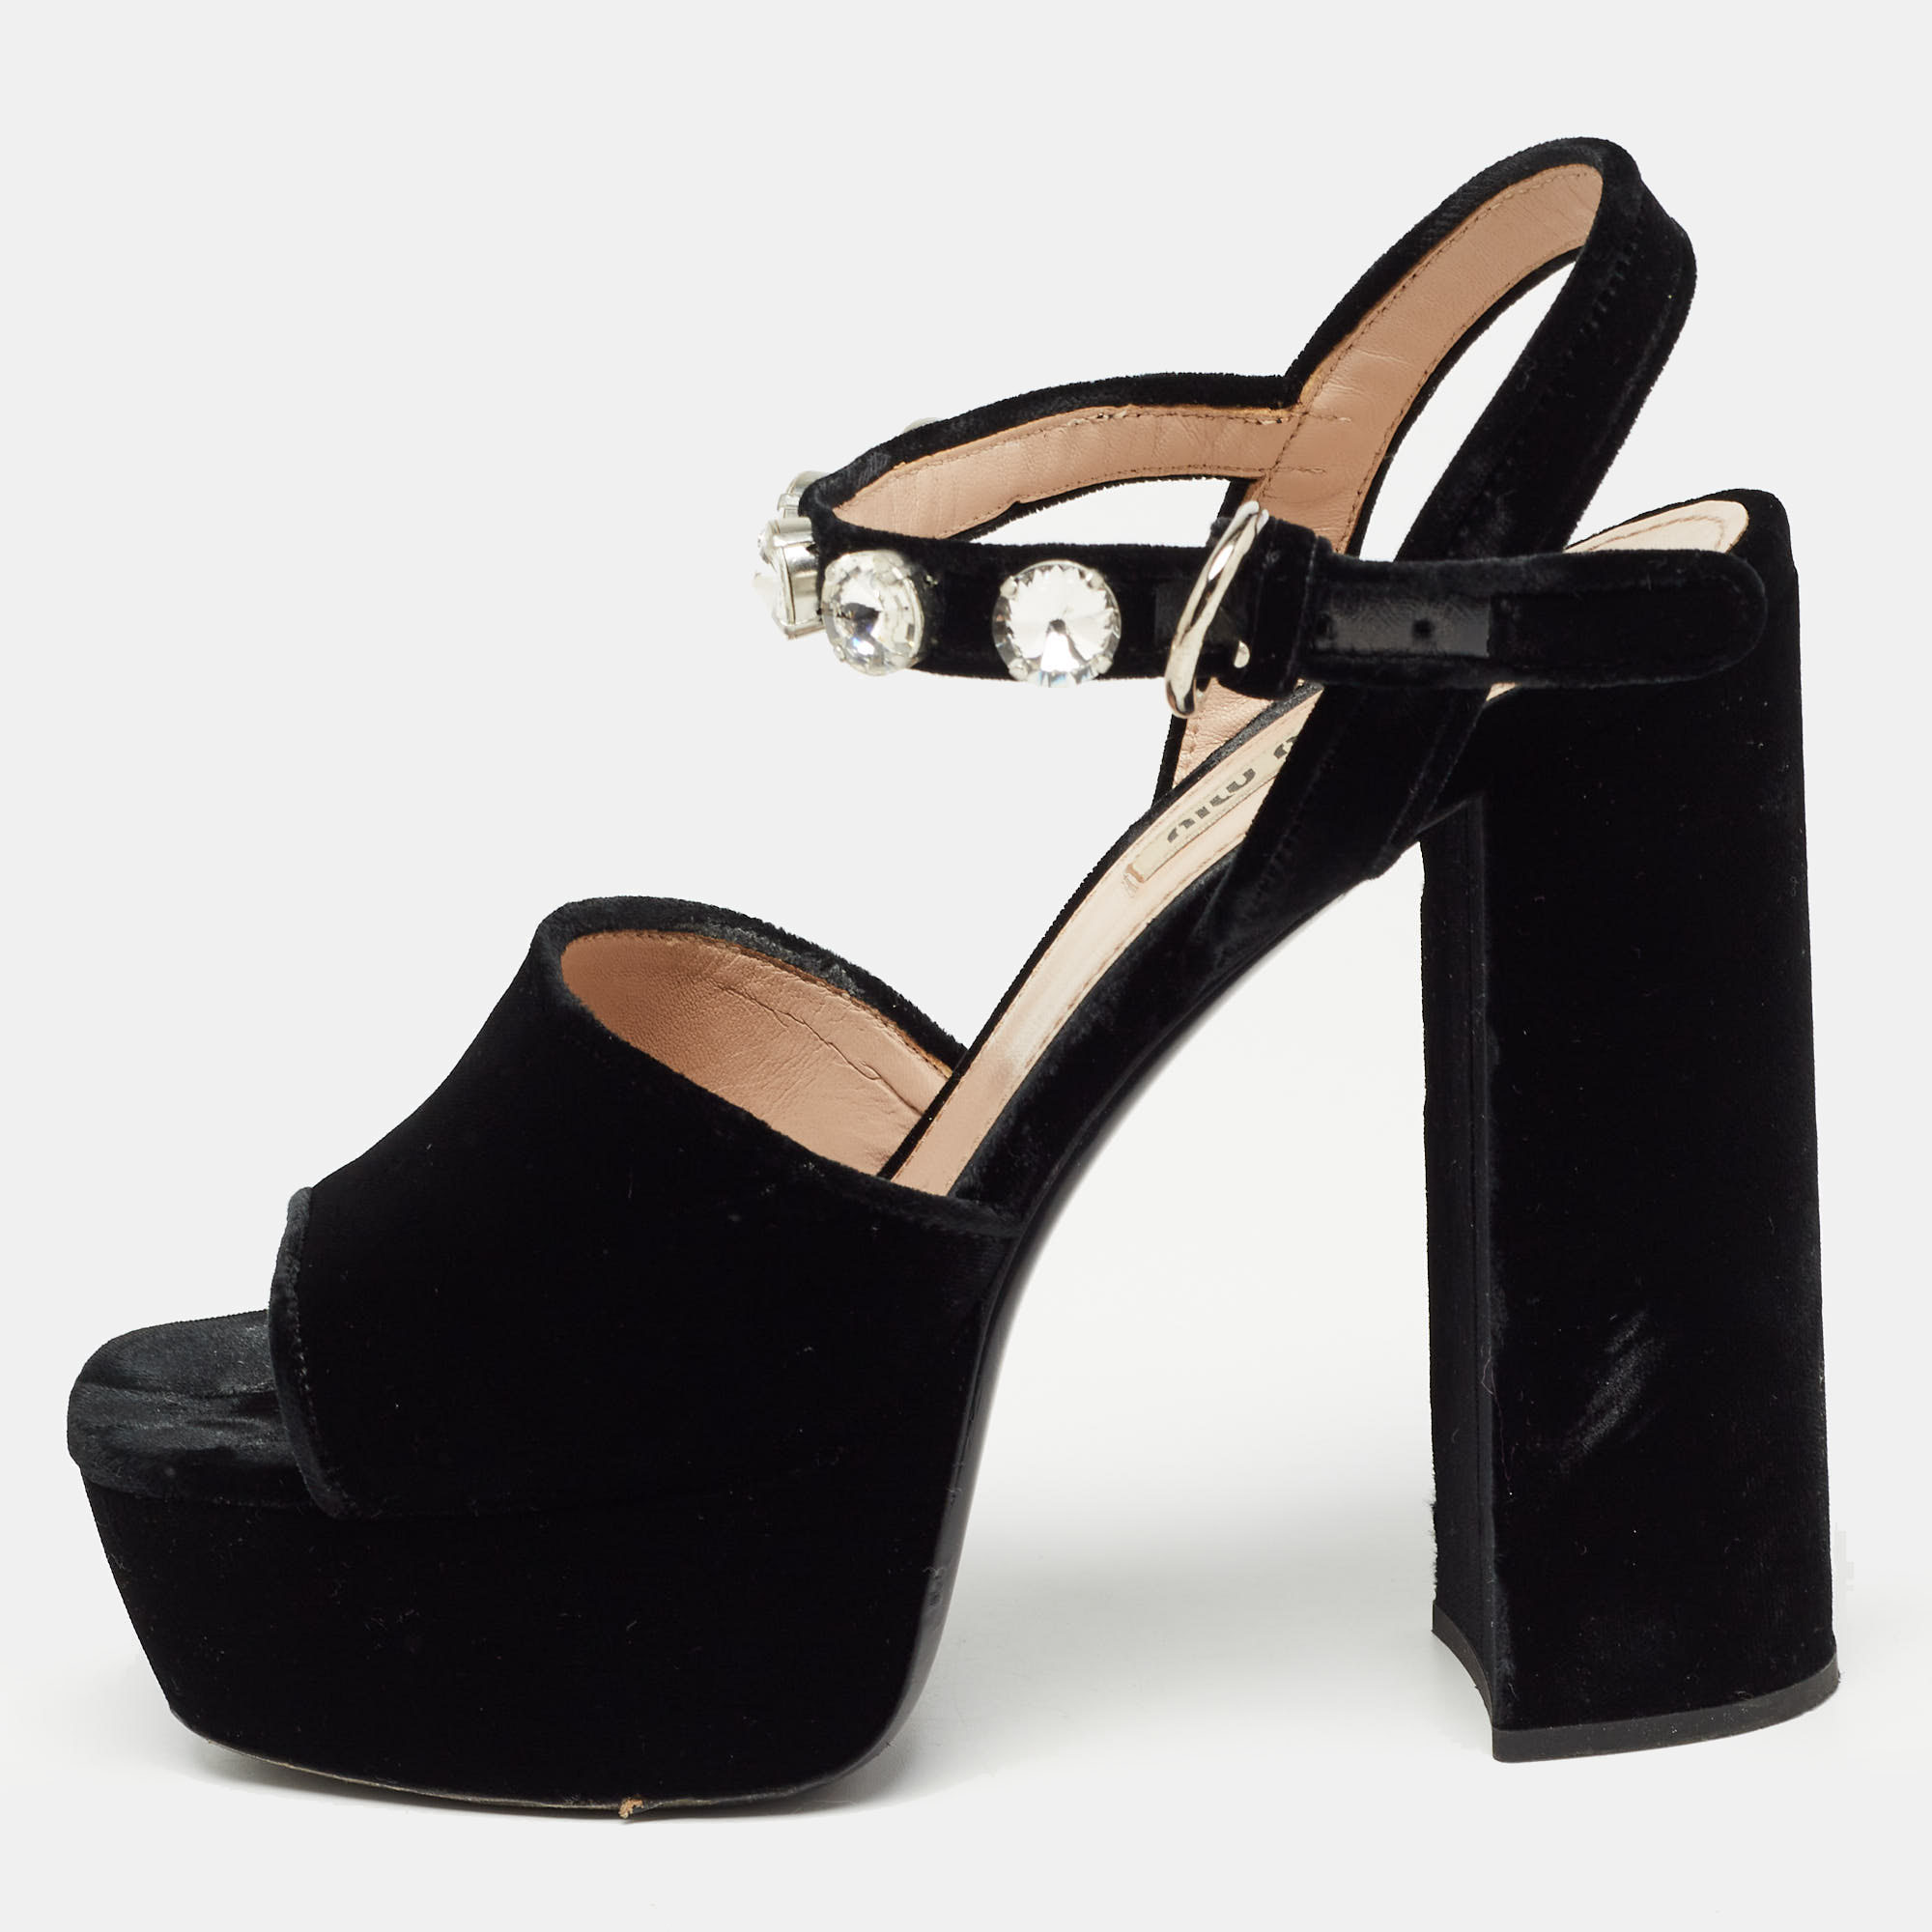 Pre-owned Miu Miu Black Suede Crystal Embellished Heel Ankle Strap Platform Sandals Size 39